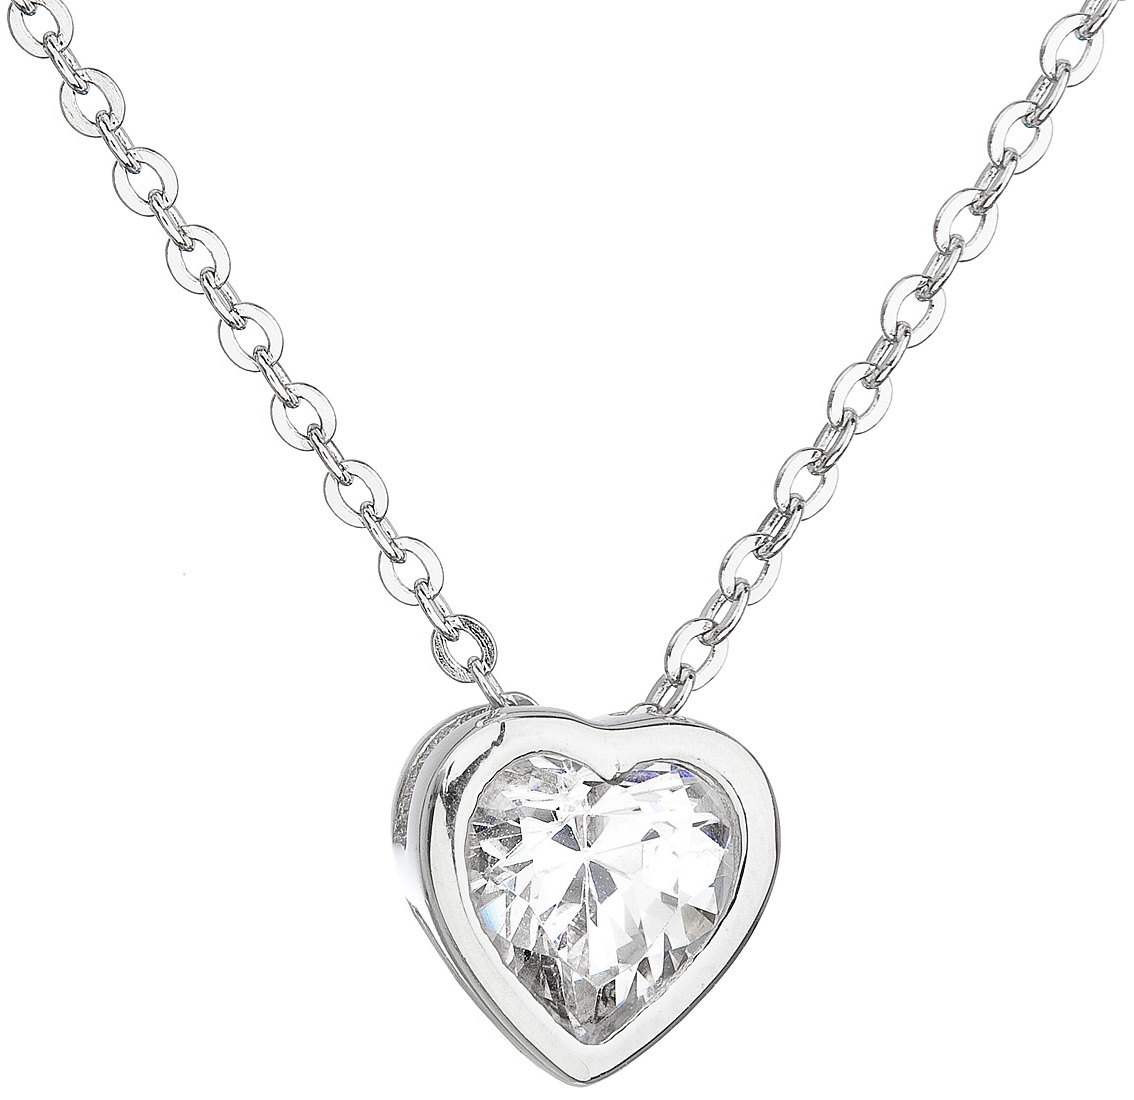 Strieborný náhrdelník so zirkónom biele srdce 12020.1